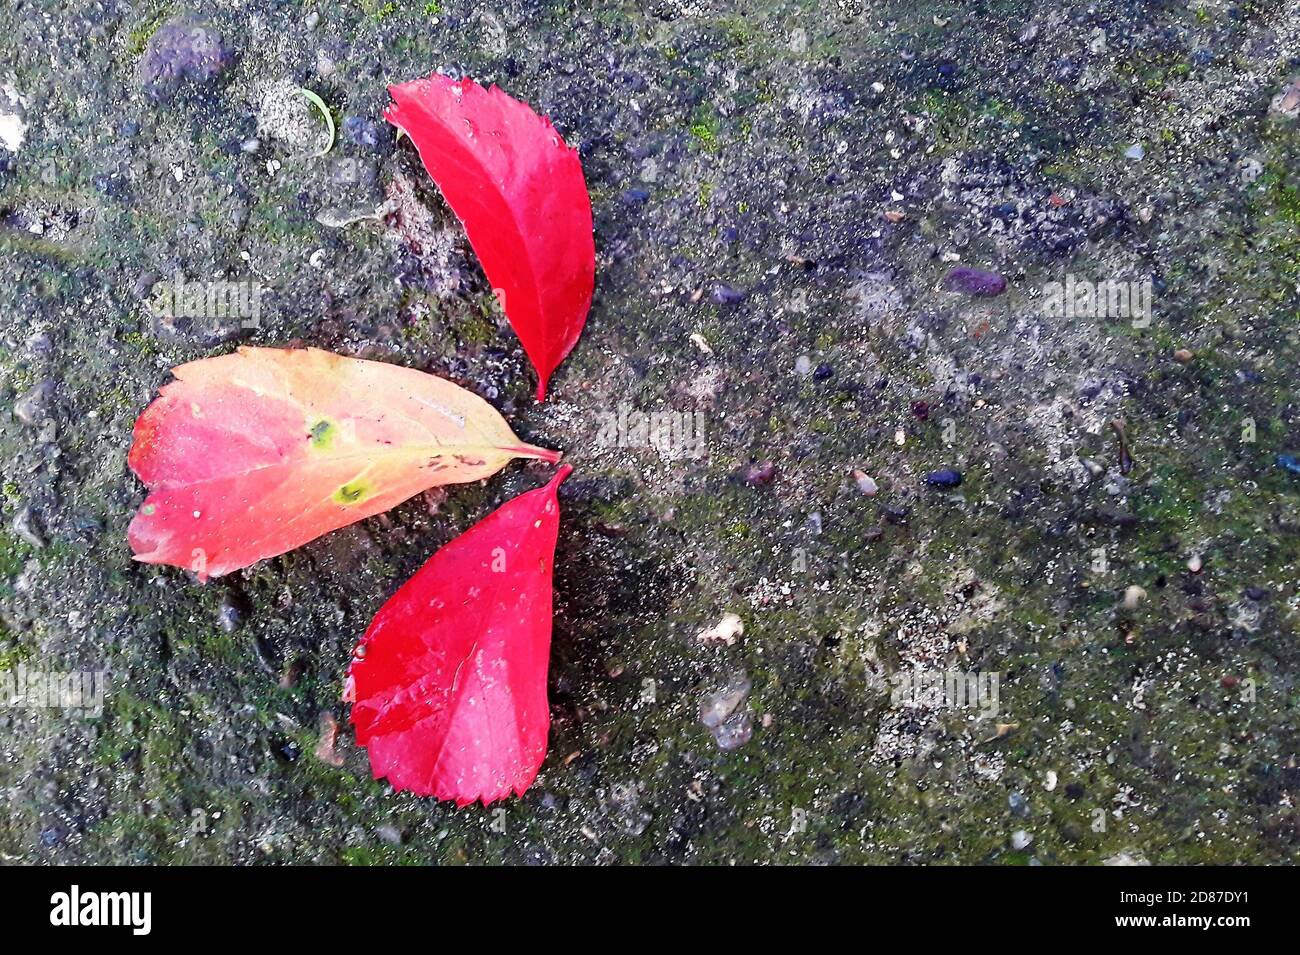 Foglie di edera rossa sul vecchio pavimento di cemento. Scarlatto foglie in caduta. Immagine orizzontale. Il contesto della crisi climatica. Foto Stock